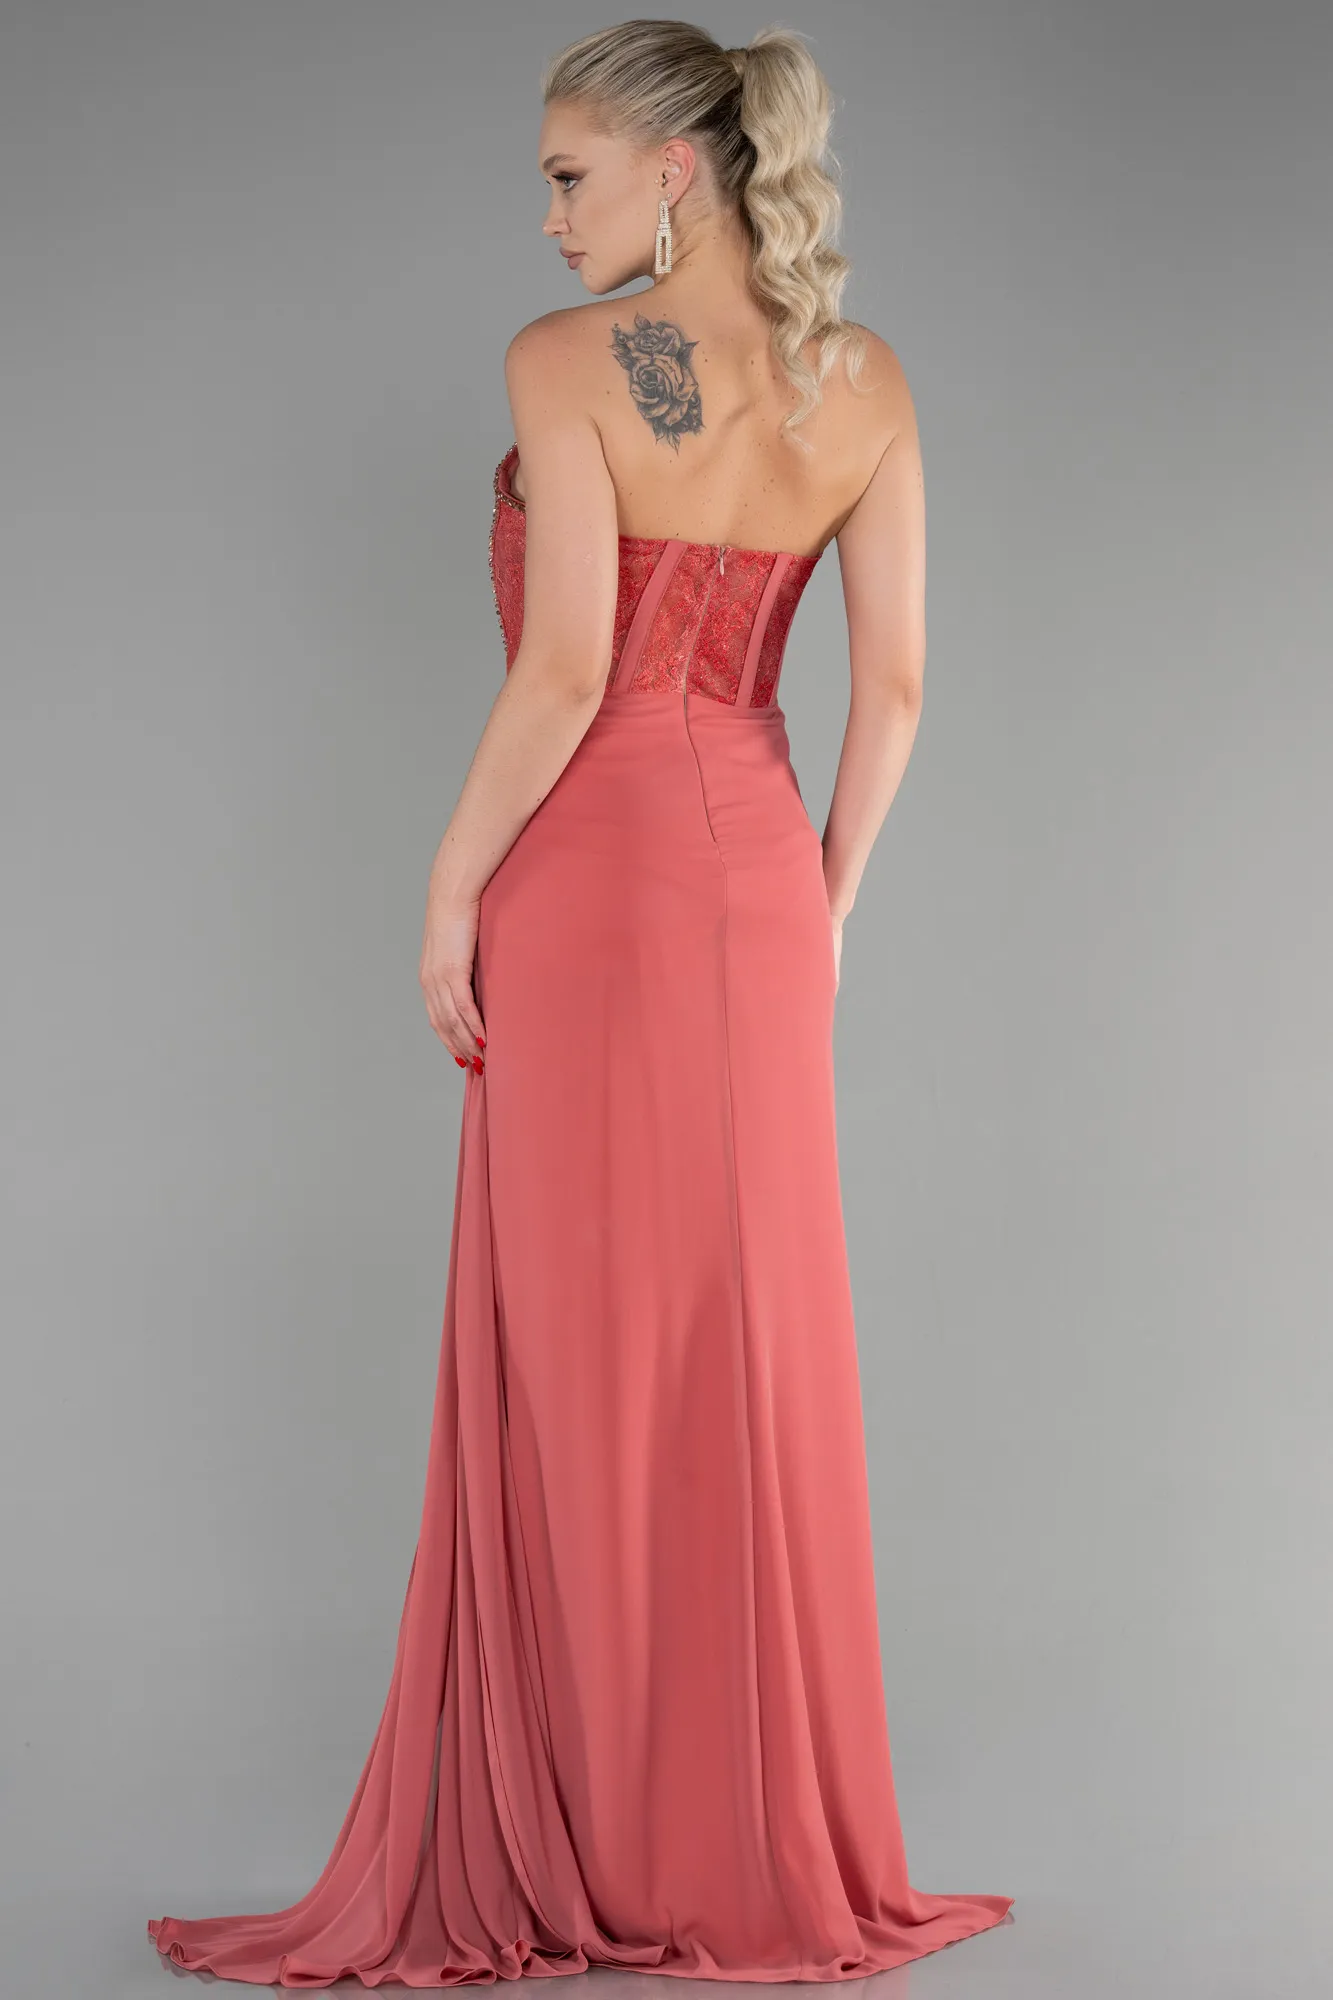 Rose Colored-Long Chiffon Evening Dress ABU3333